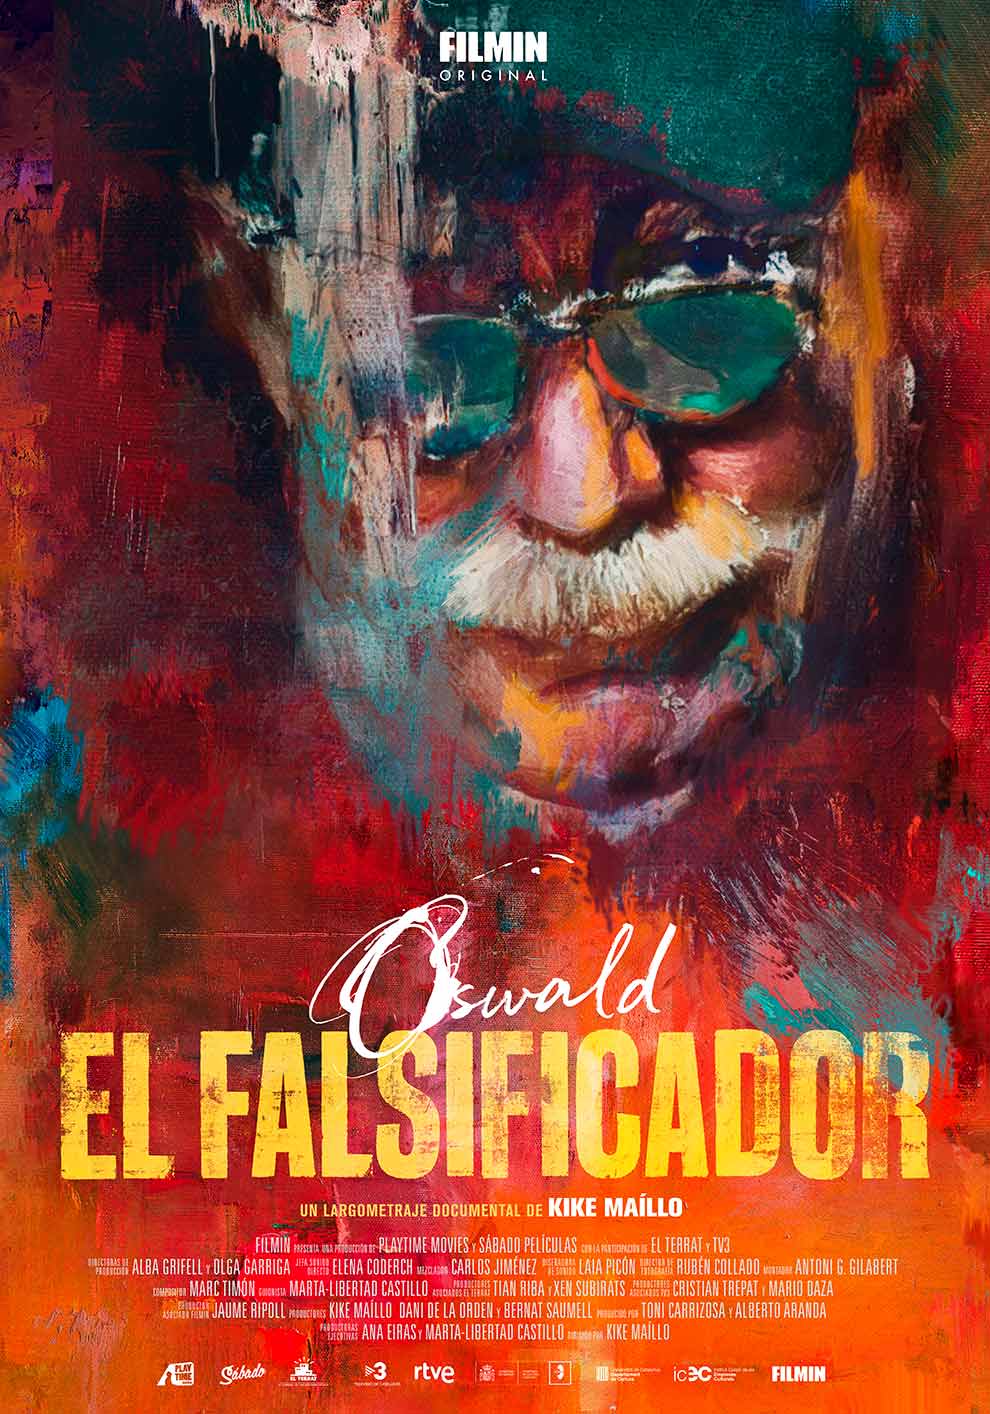 OSWALD. EL FALSIFICADOR